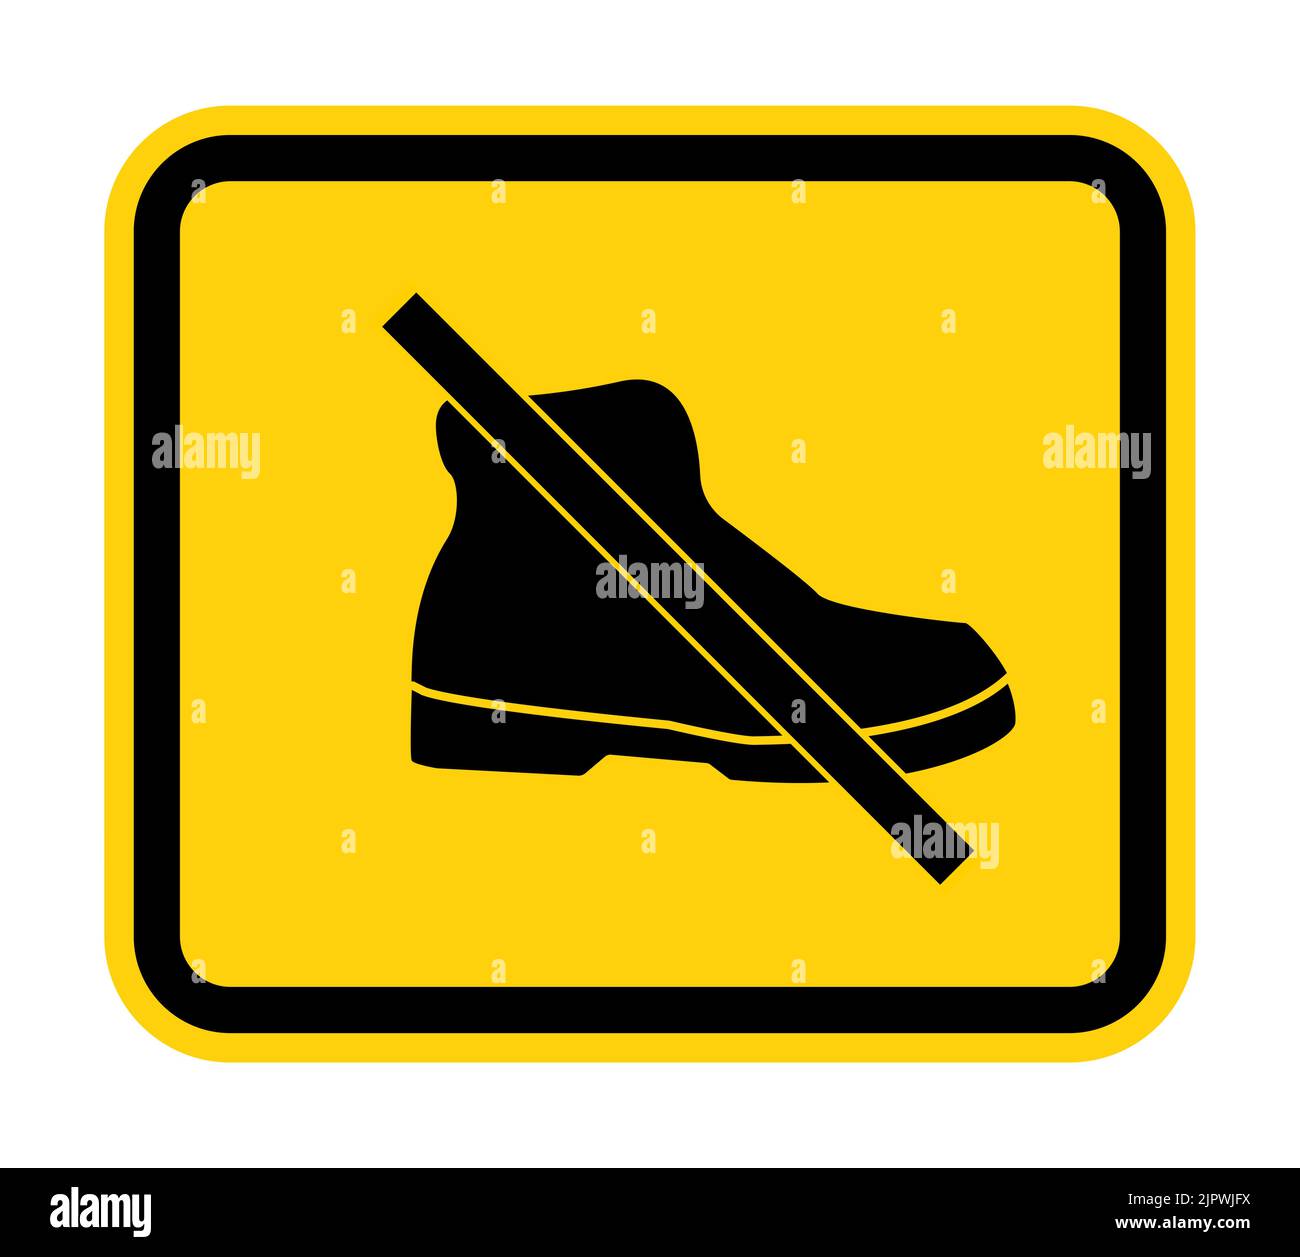 Take off shoes Banque d'images vectorielles - Alamy